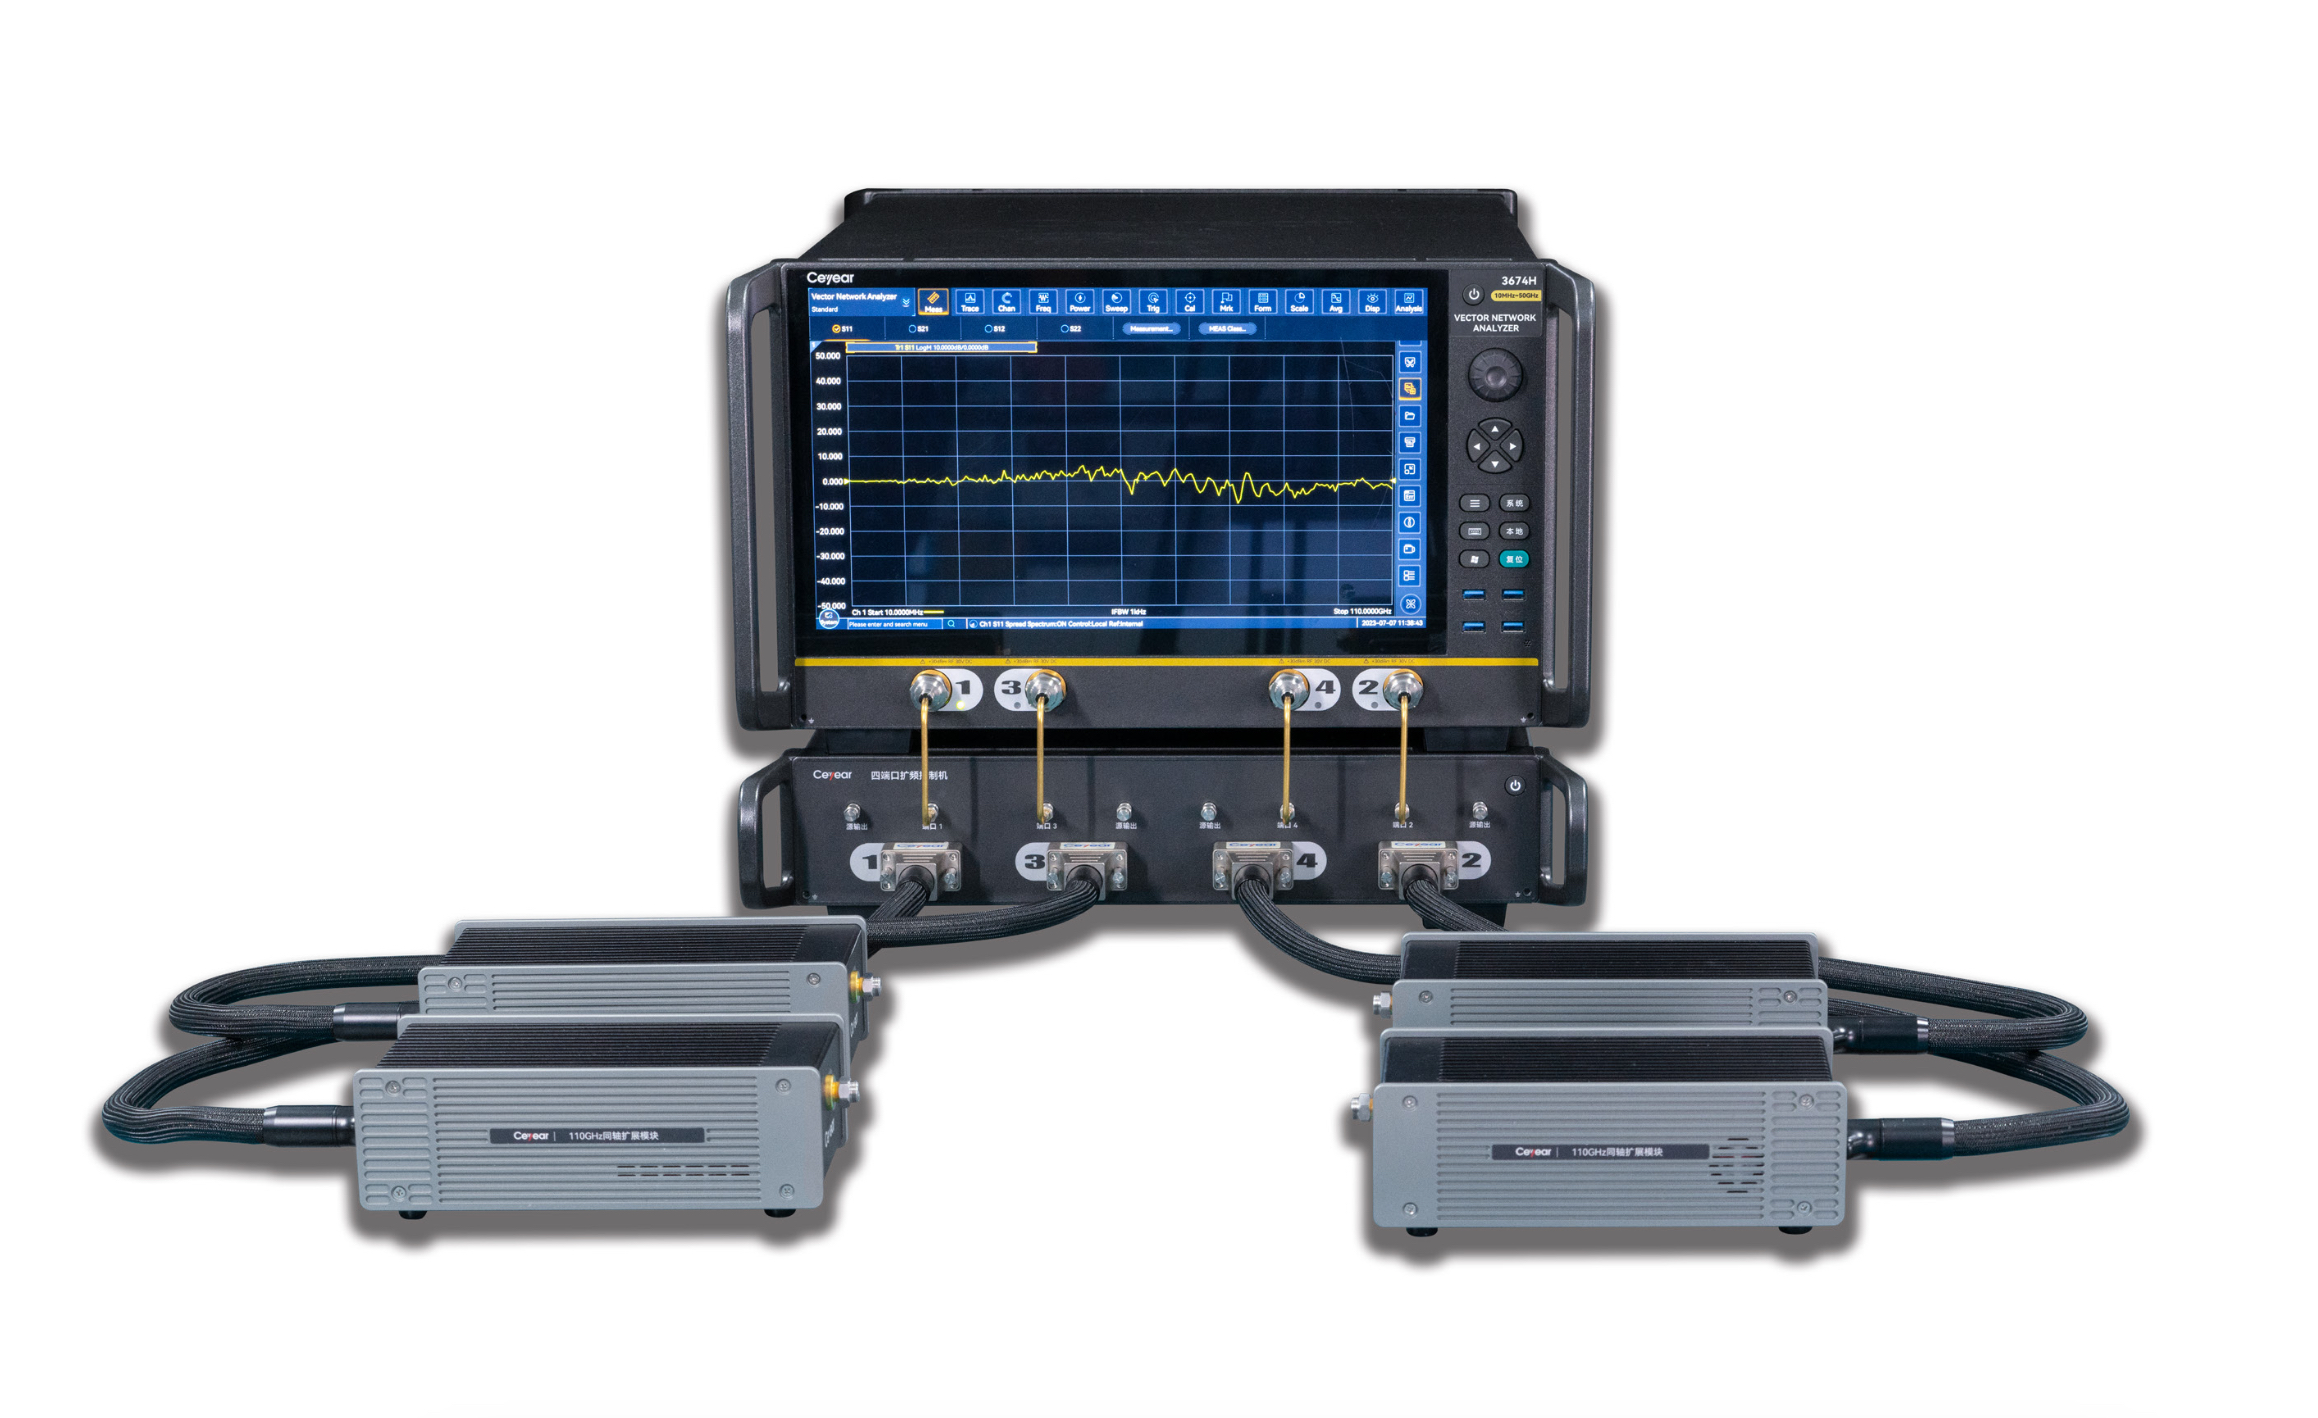 Векторный анализатор Ceyear серии 3674
с диапазоном частот от 500 Гц до 110 ГГц